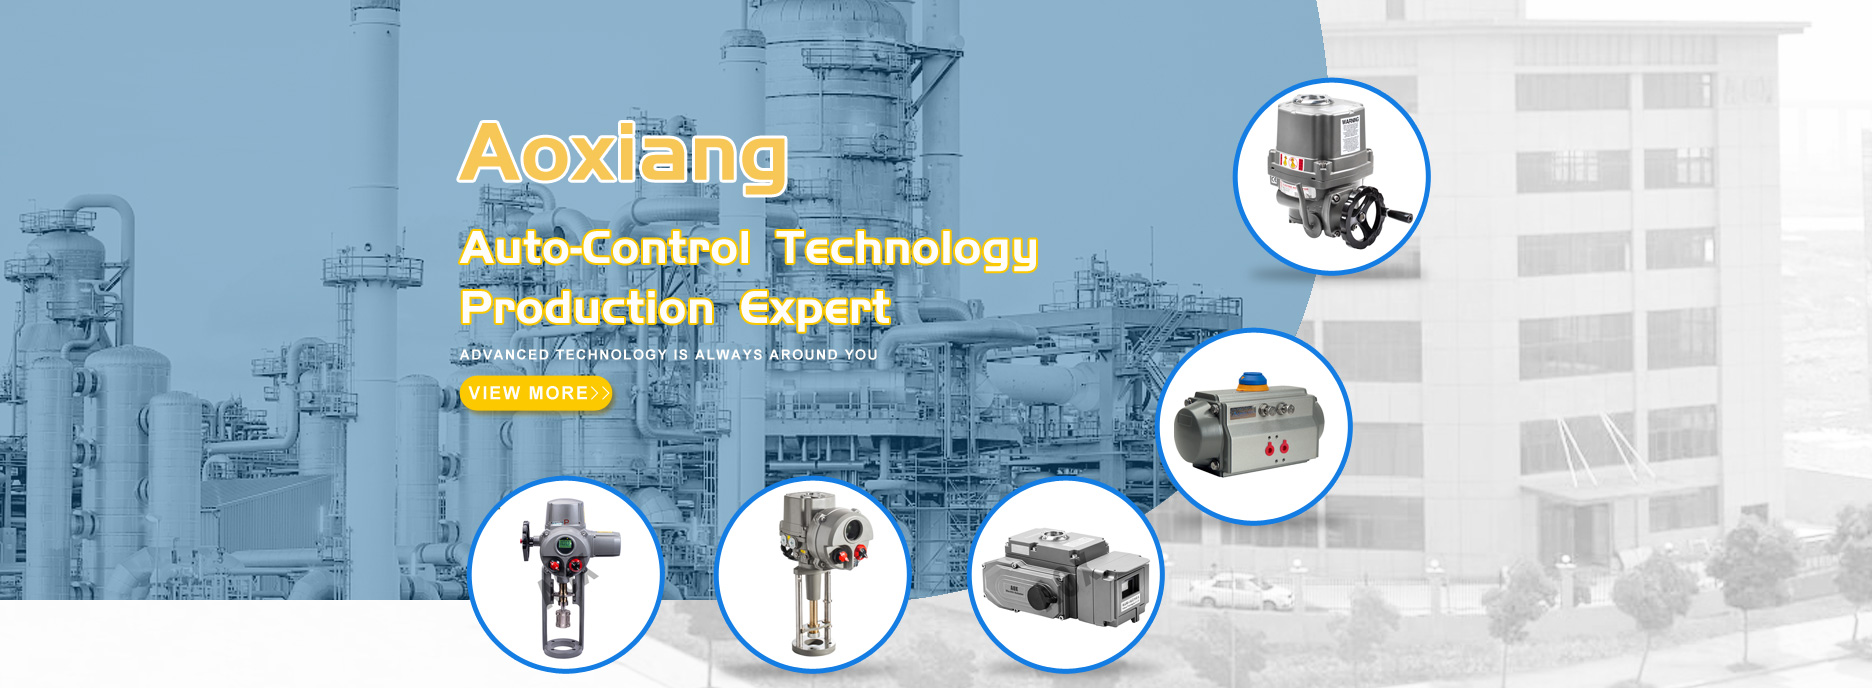 Aoxiang Automatyczna kontrola Technologia Produkcja Ekspert